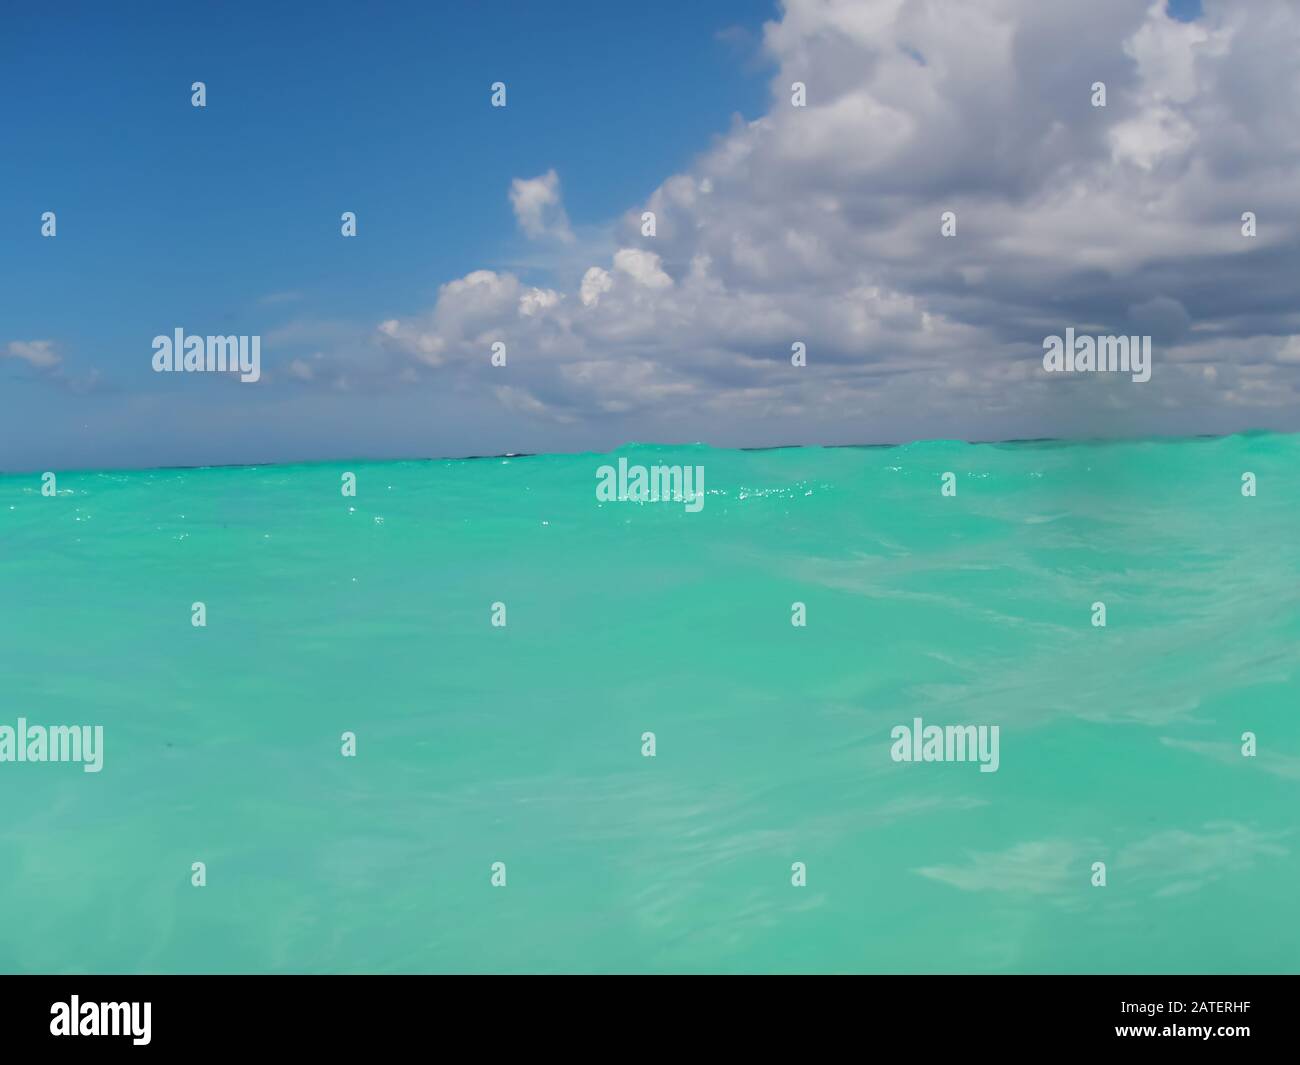 Ondulaciones del mar Caribe y cielo nublado en el horizonte, concepto de perspectiva Foto de stock